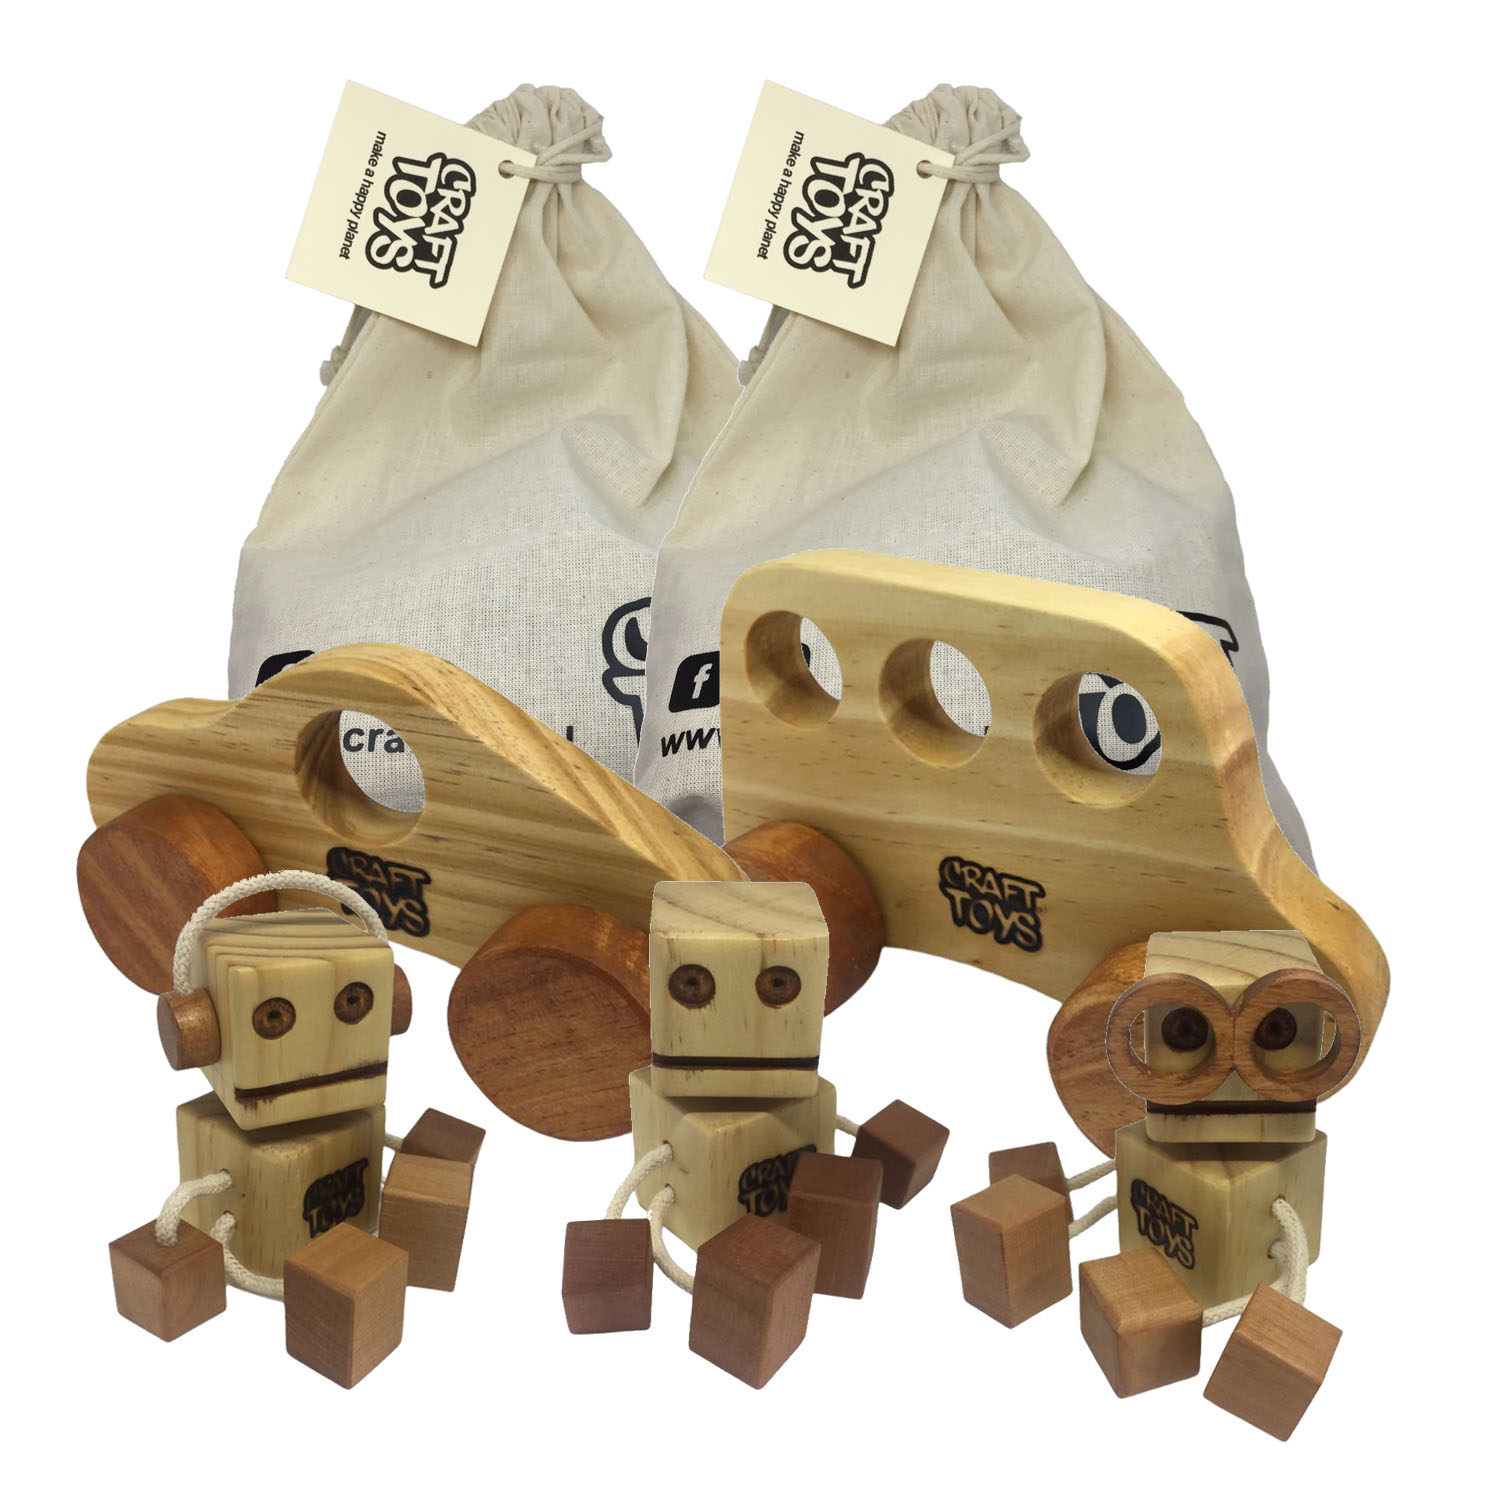 Juguete de madera Mix 5 incluye 5 juguetes